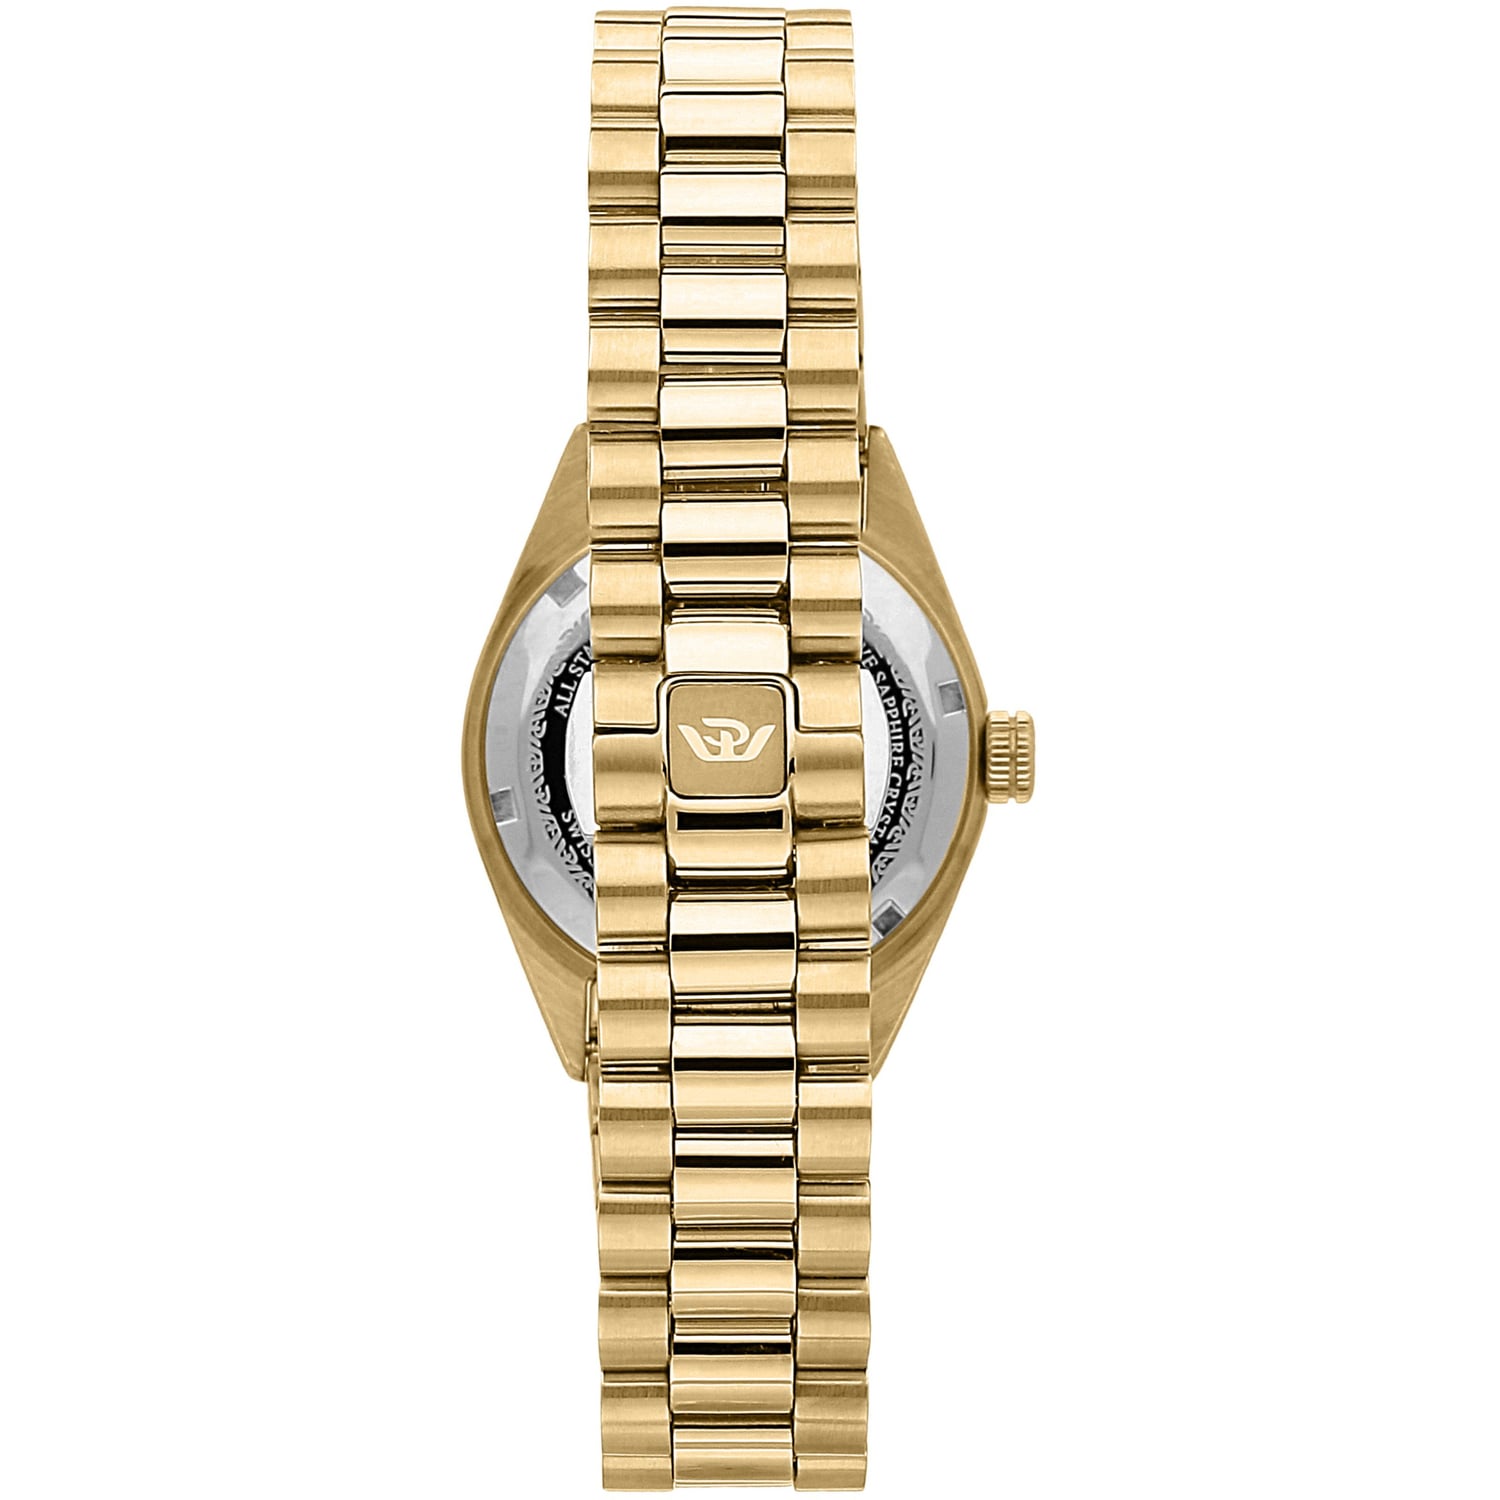 3-philip-watch-watches-caribe-r8253597591_v3n2af